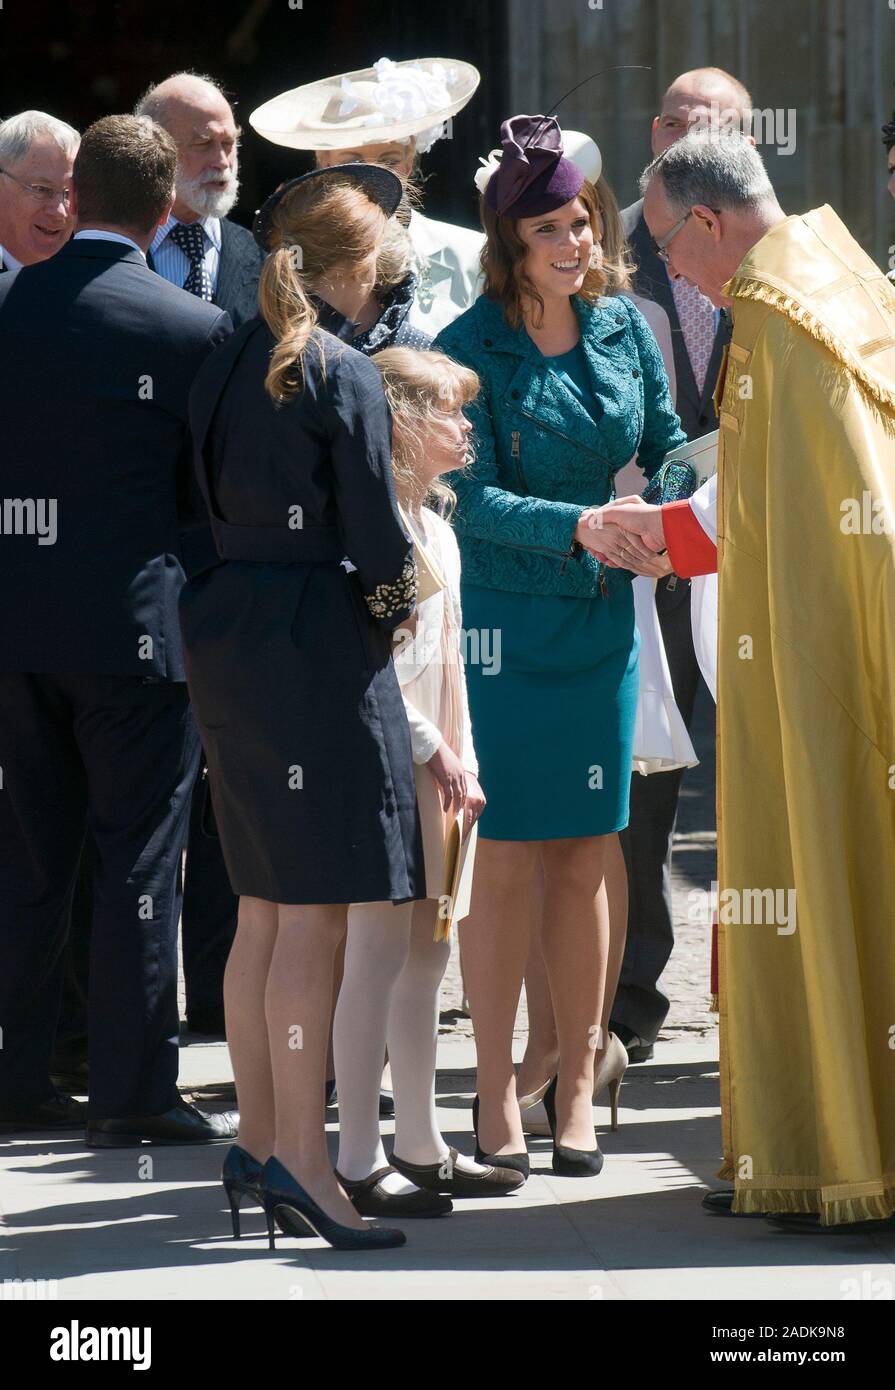 La principessa Eugenie e Beatrice con la signora Louise Windsor unisciti alla regina a Westminster Abbey per una cerimonia per commemorare il sessantesimo anniversario della sua incoronazione nel 1953. Accompagnata dal Duca di Edimburgo, il principe Carlo e la duchessa di Cornovaglia, il Duca e la Duchessa di Cambridge e gli altri membri della famiglia reale Giugno 2013. Foto Stock